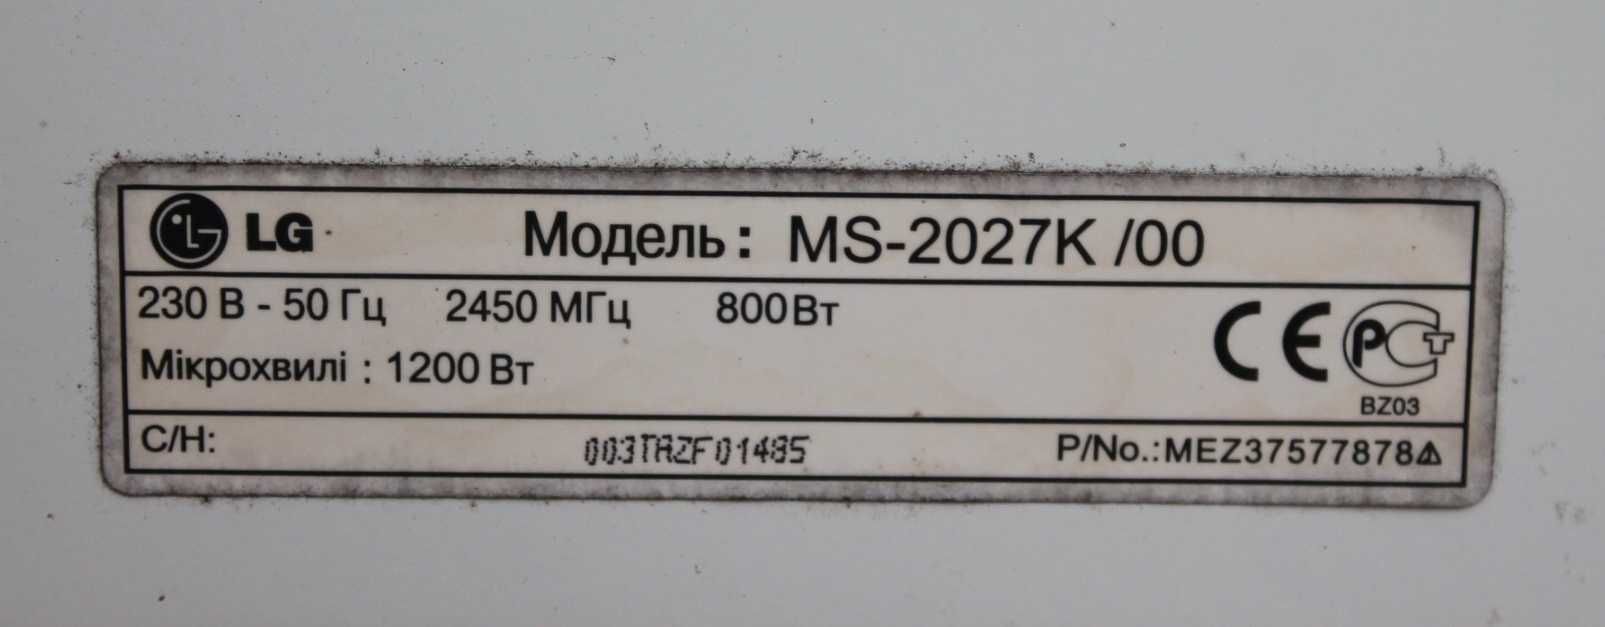 Микроволновая печь LG MS-2027K на детали.